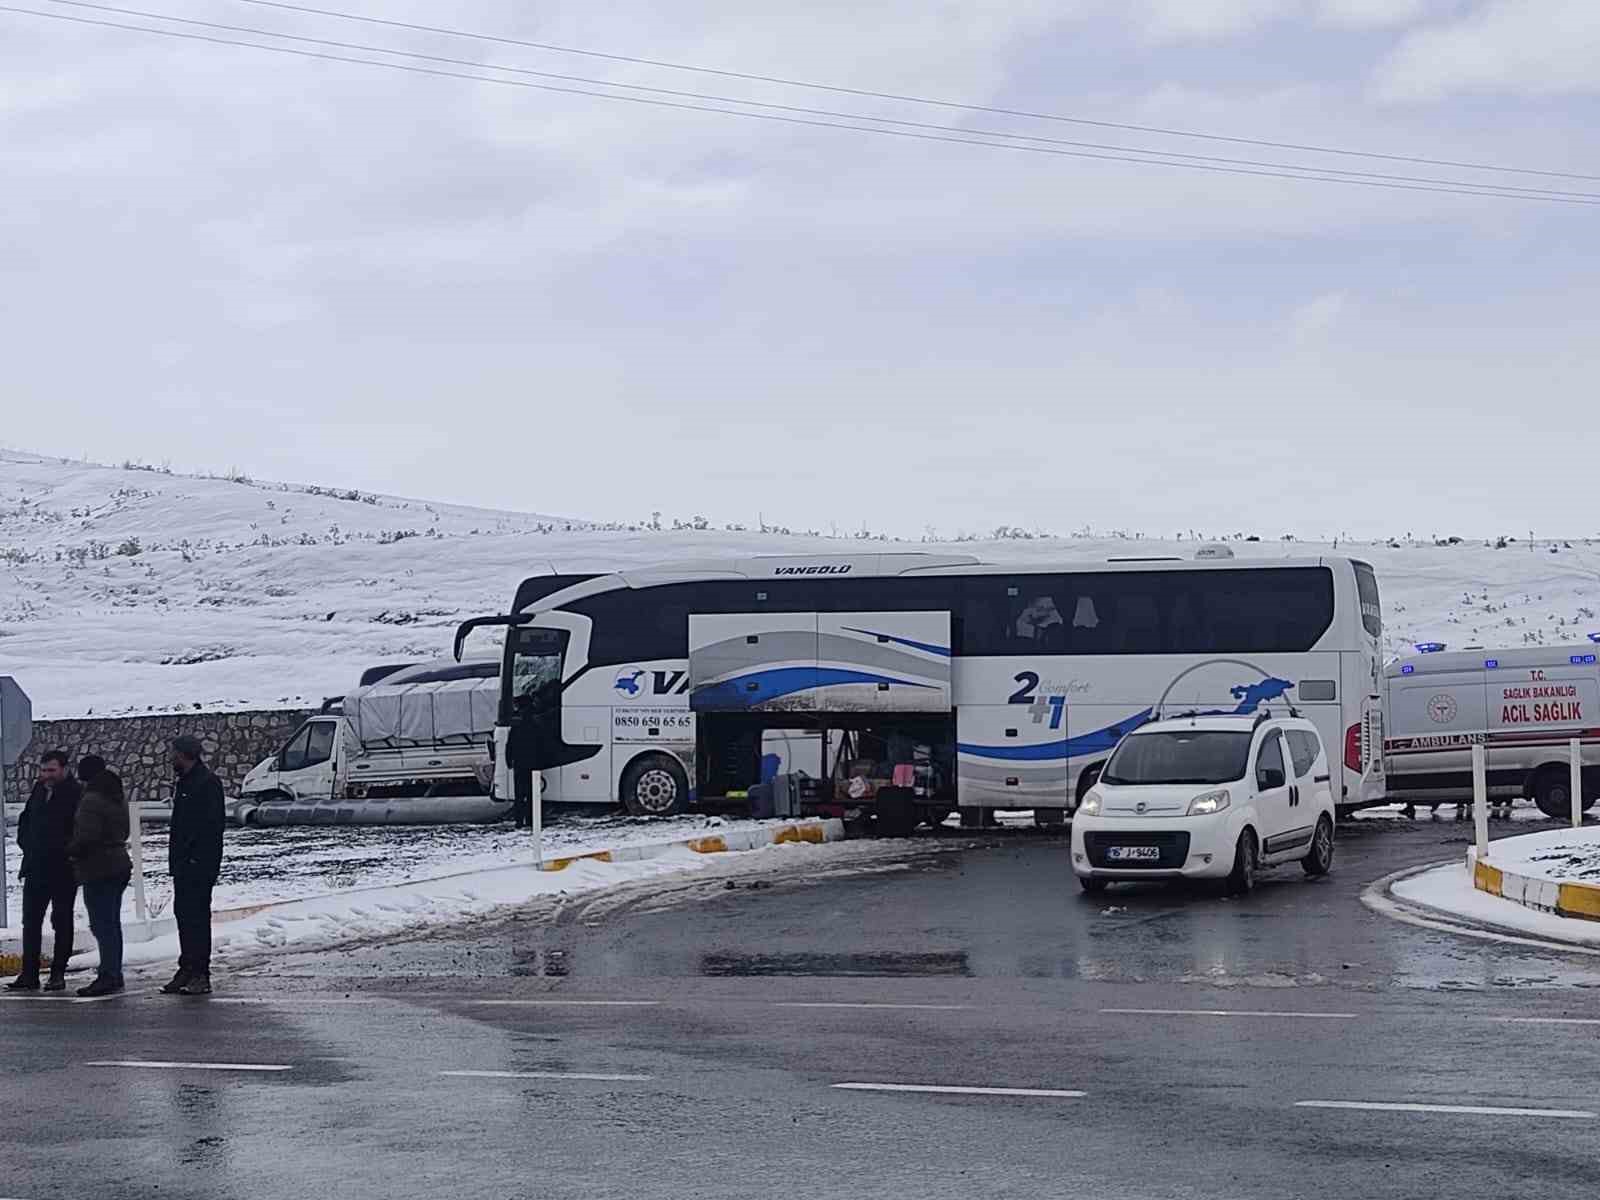 Ağrı’da yolcu otobüsü ile kamyonet çarpıştı: 11 yaralı